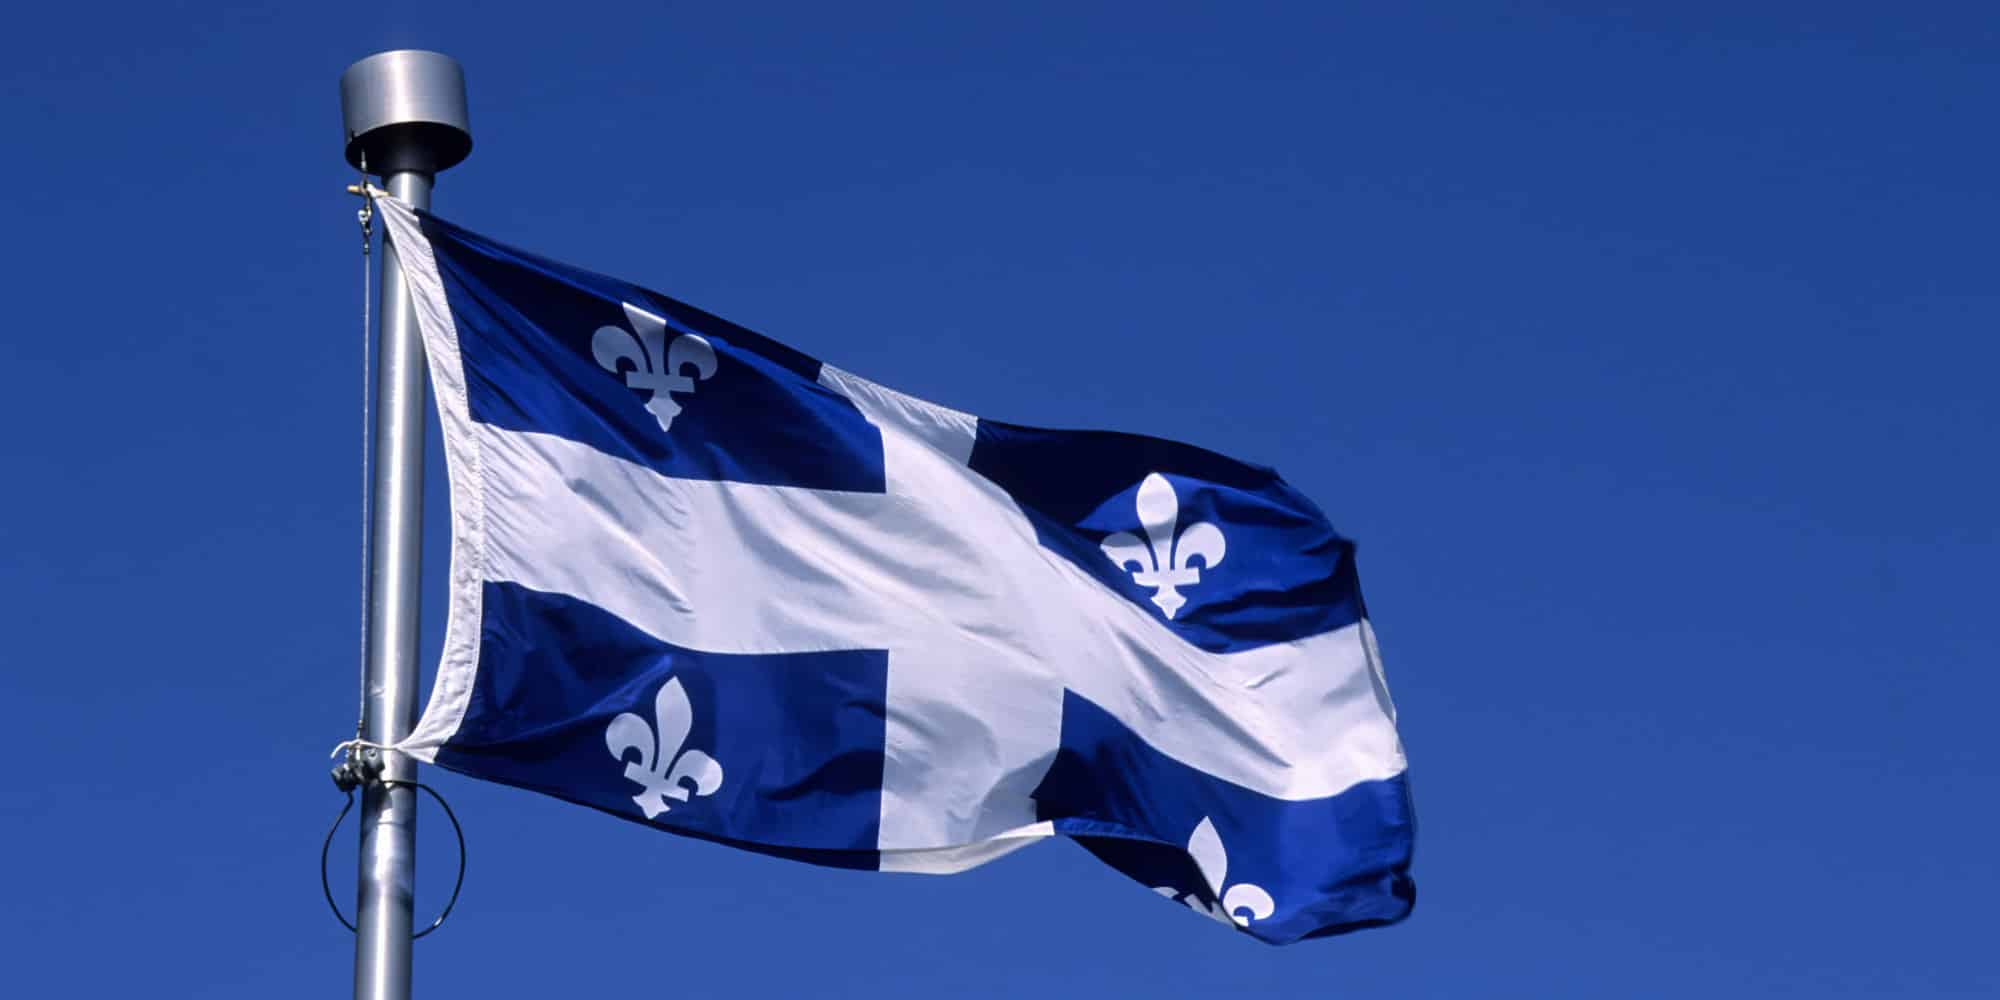 Quebec decide suspender temporalmente el sistema de apadrinamiento de refugiados debido a exceso de solicitudes